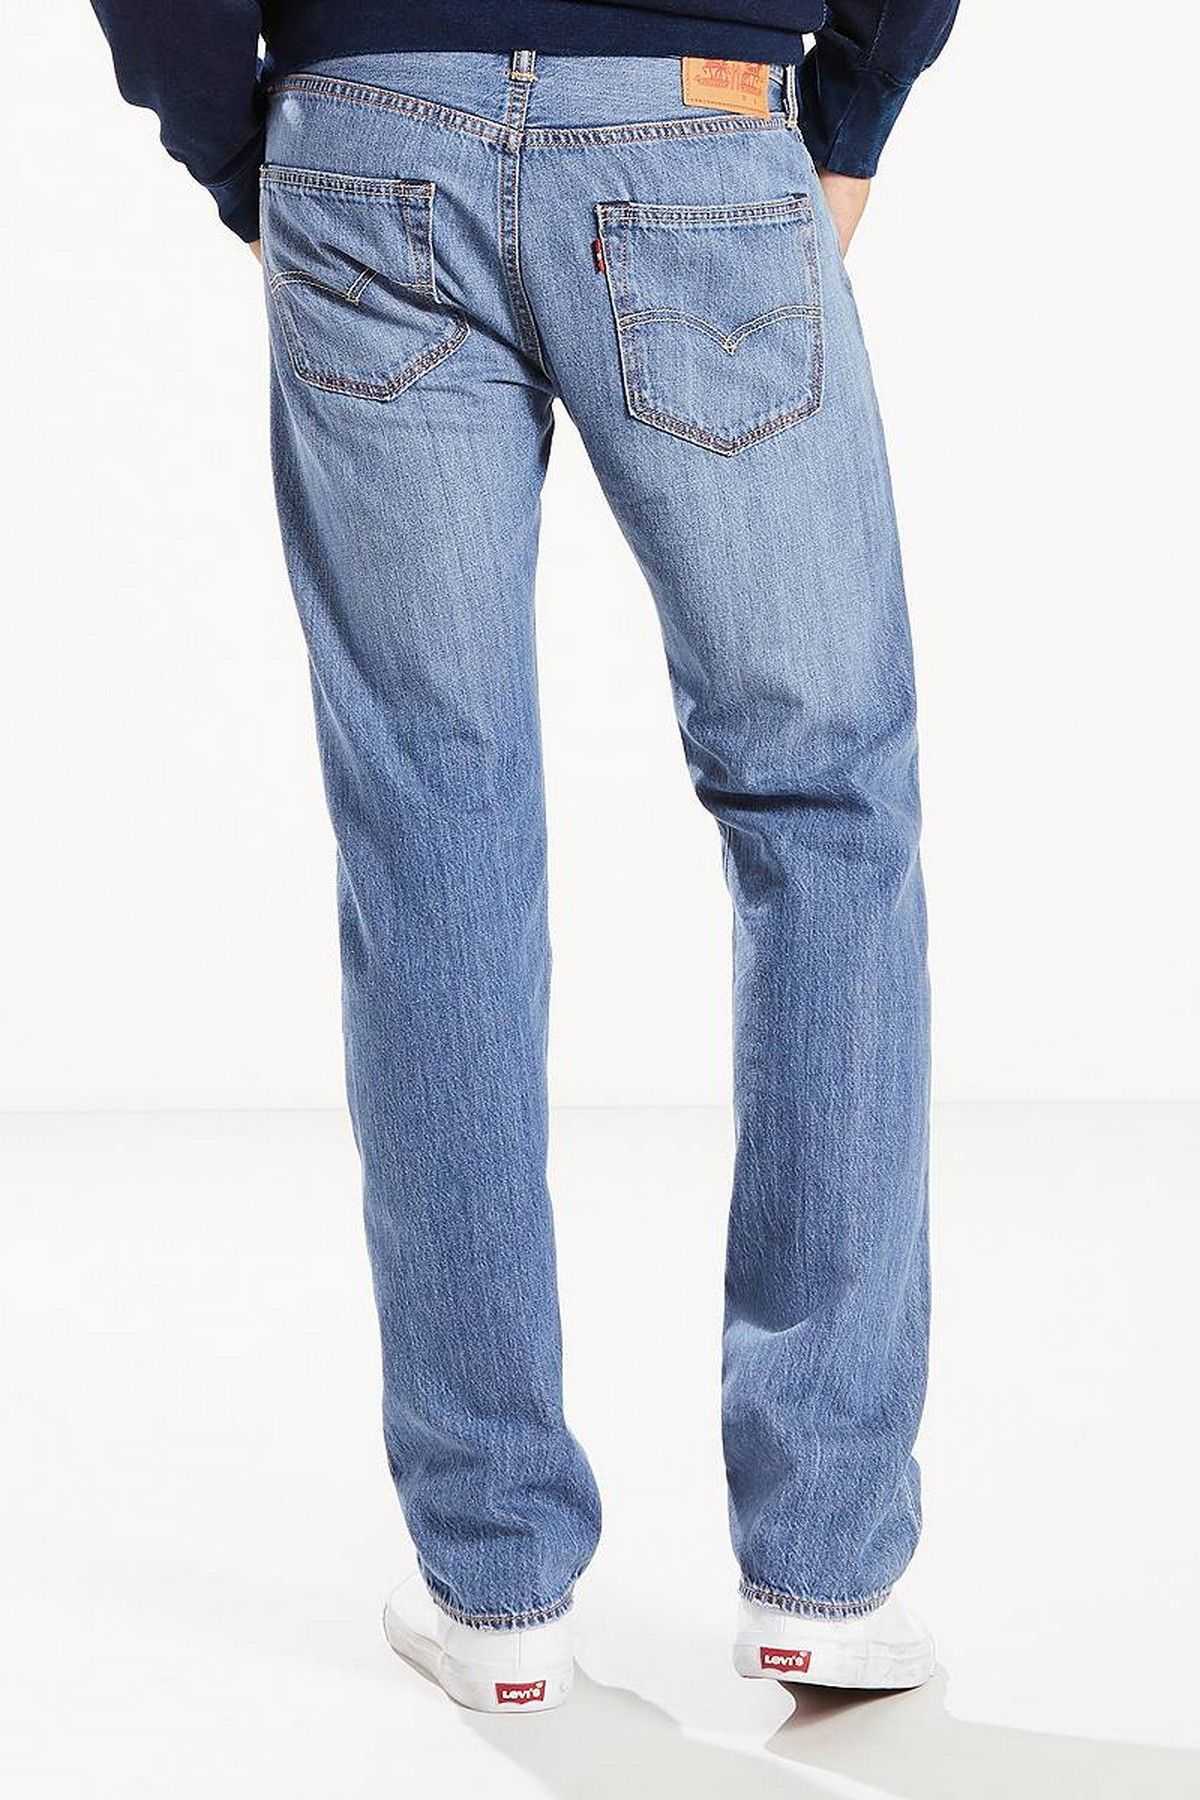 Все фасоны мужских джинсов — фото и характеристика